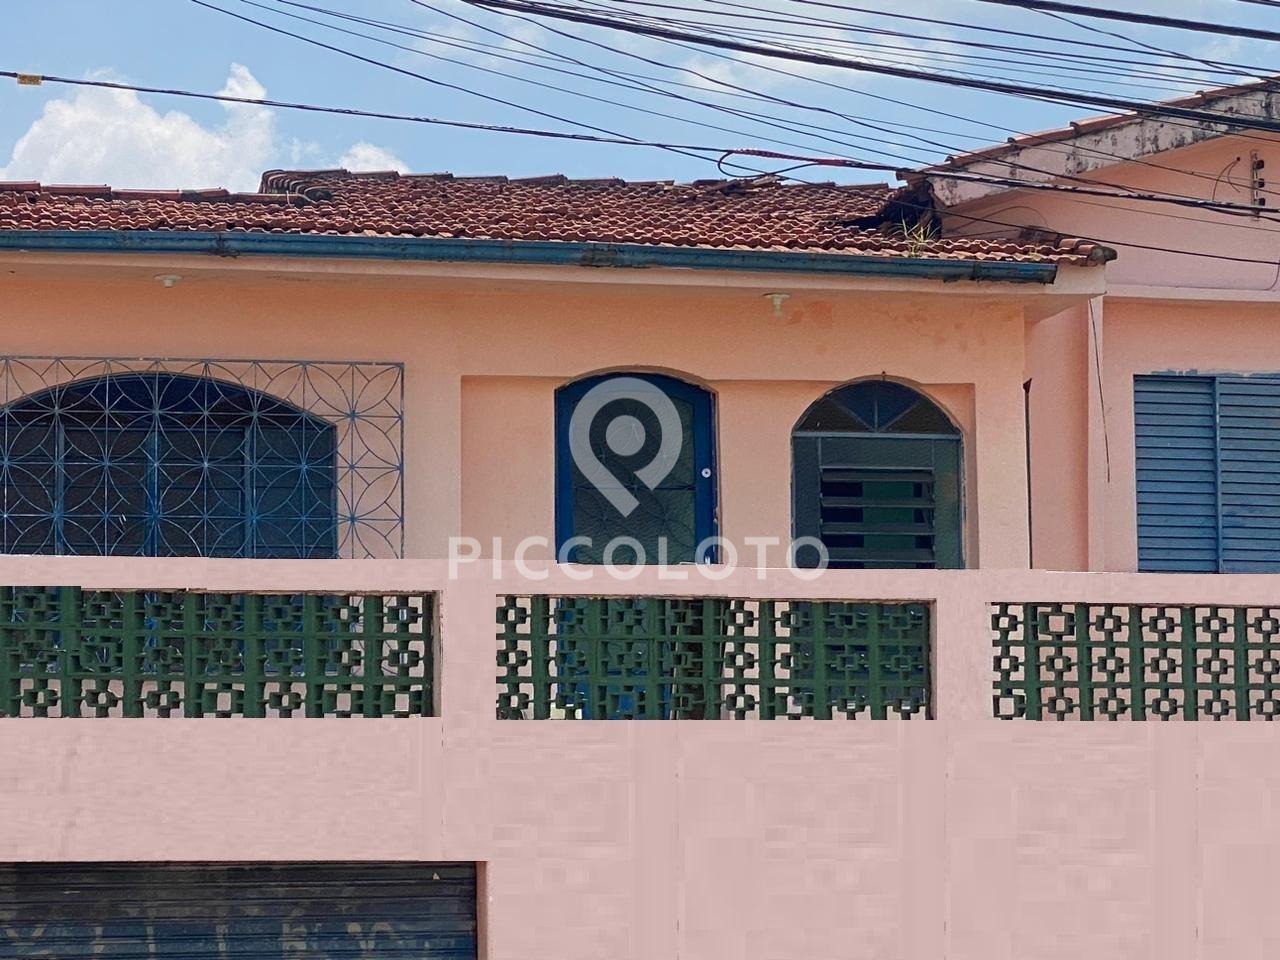 Piccoloto -Casa à venda no Parque Industrial em Campinas